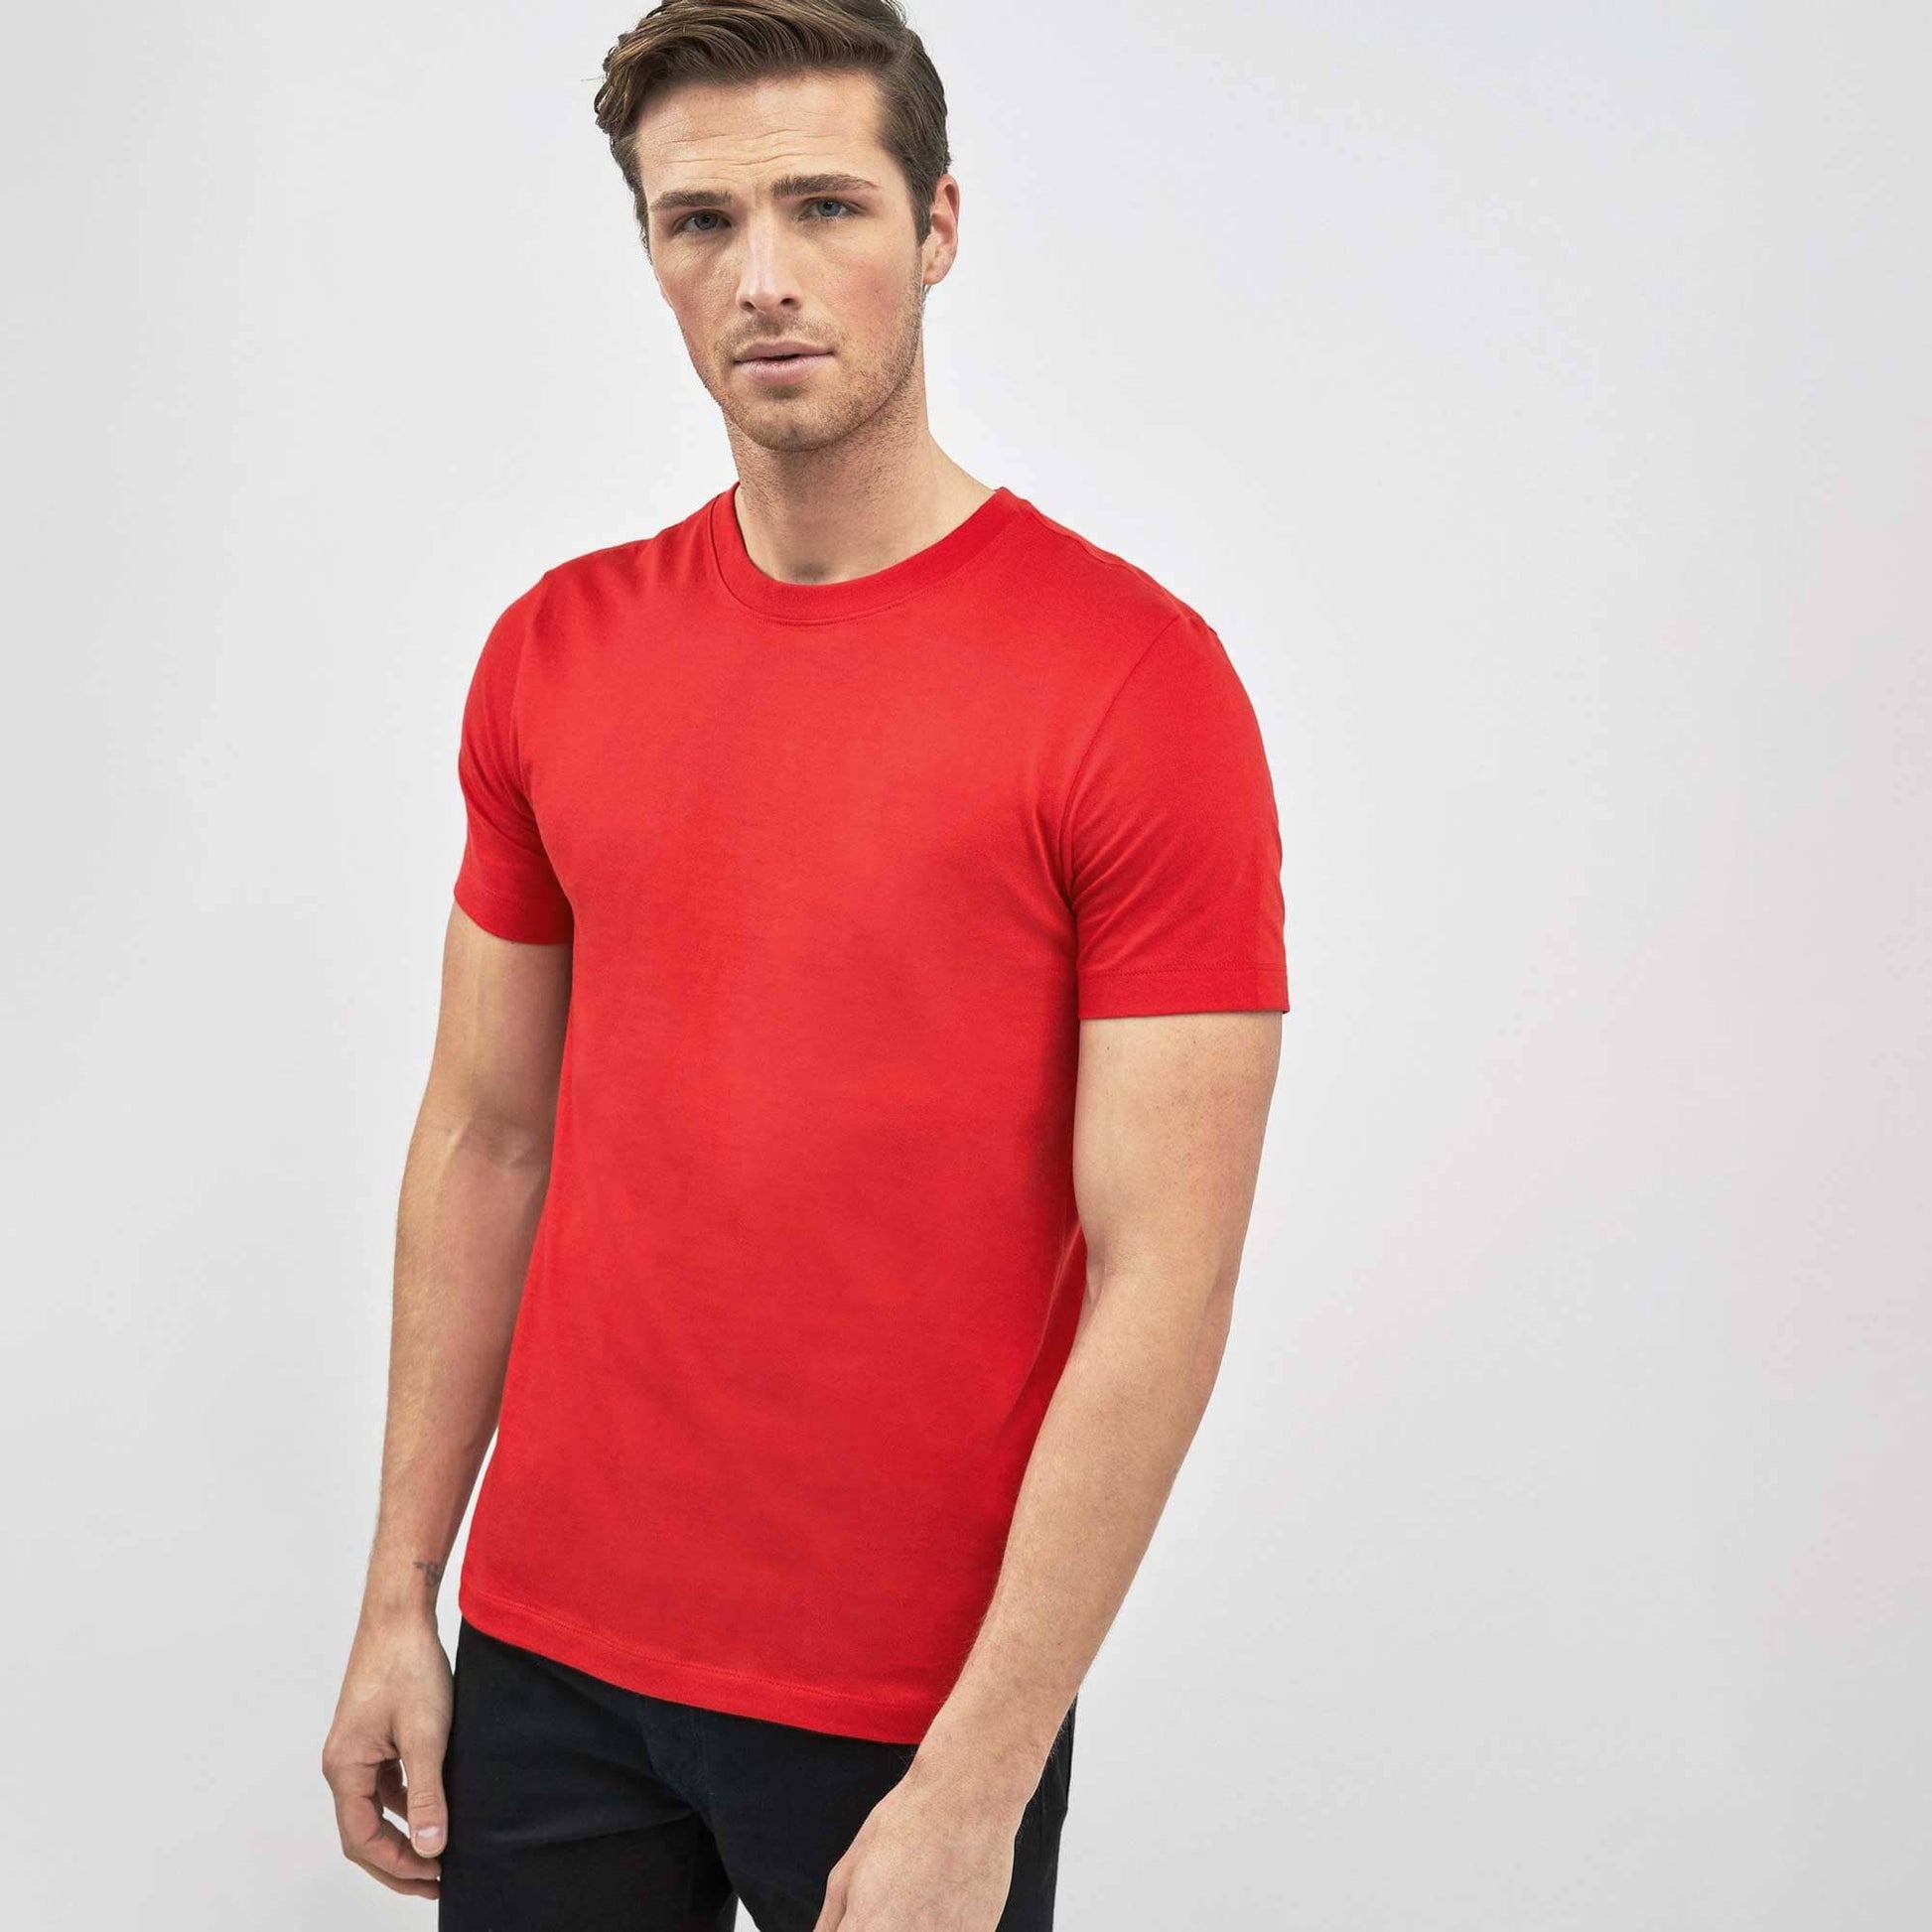 Polo Republica Men's Essentials Combed Cotton Short Sleeve Tee Shirt Men's Tee Shirt Polo Republica Red S 